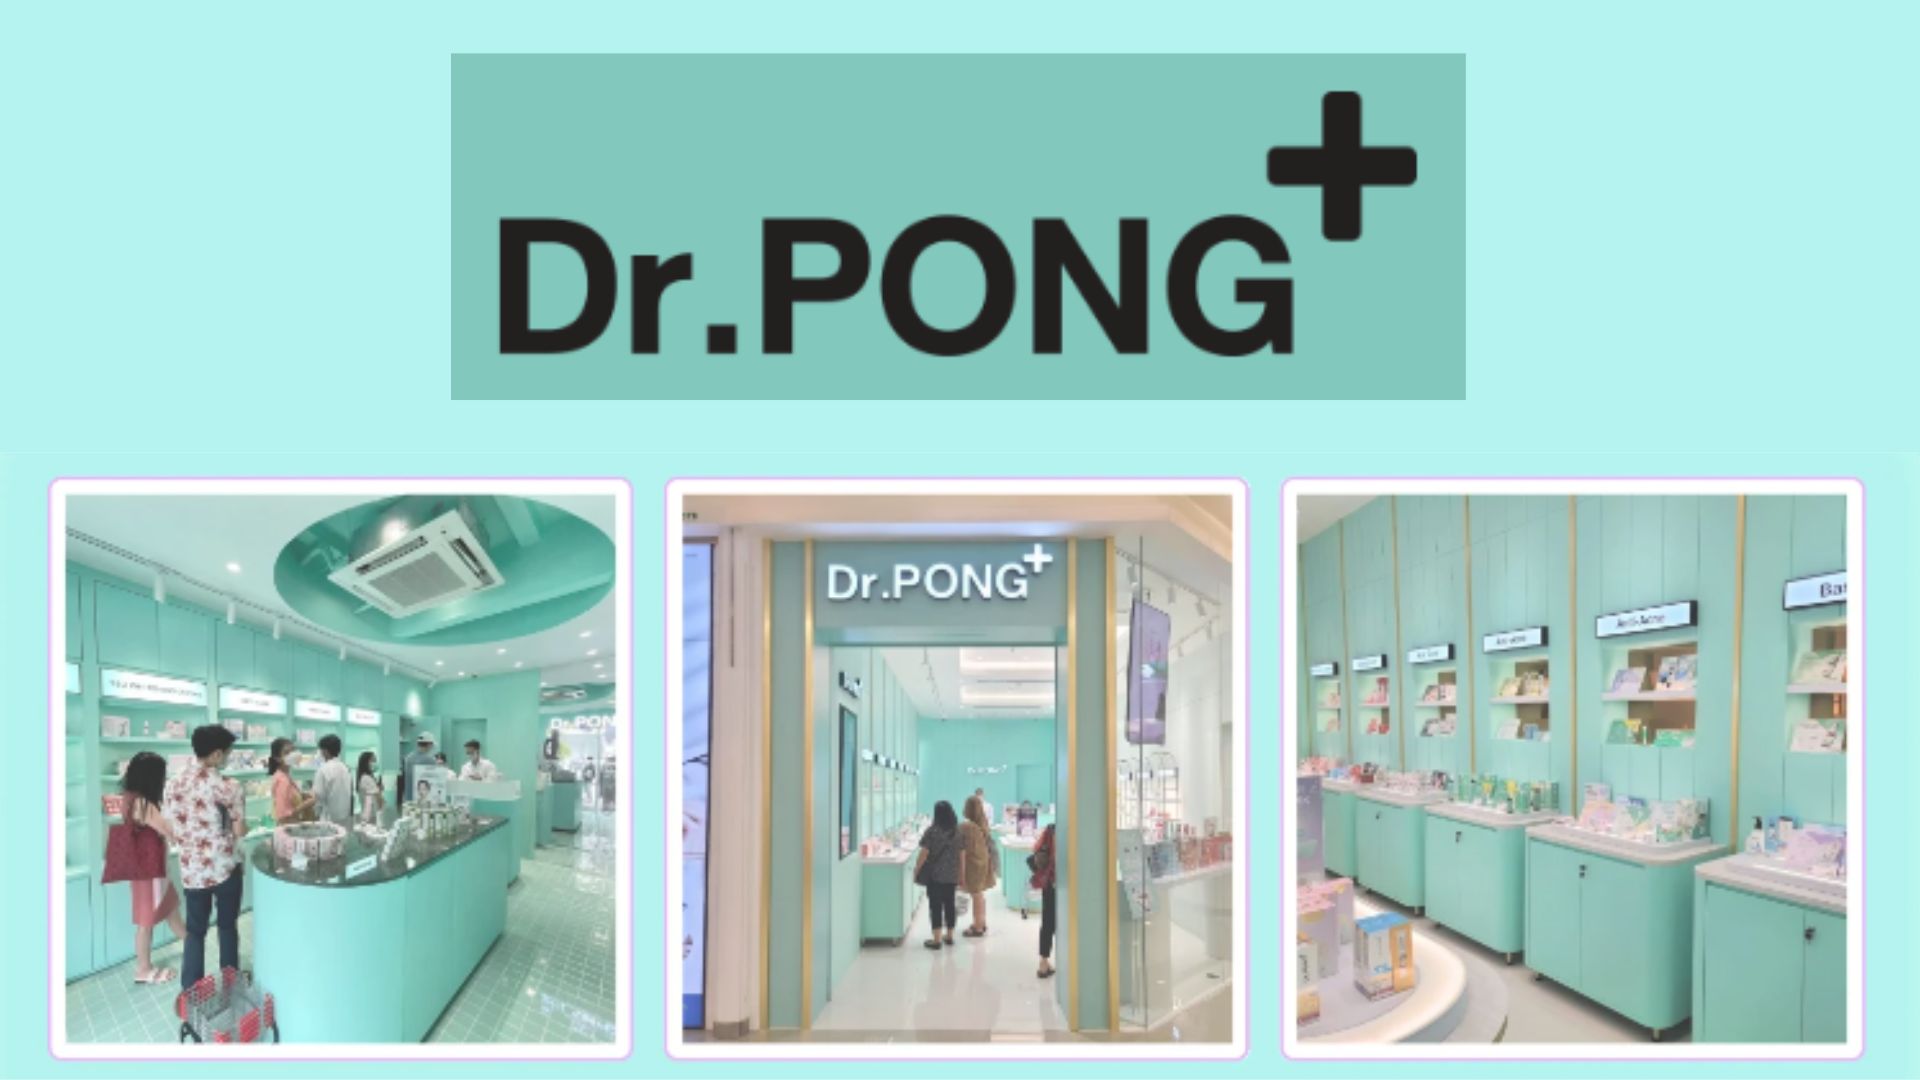 Dr.PONG là một thương hiệu chăm sóc da hàng đầu tại Thái Lan (Nguồn: Internet)